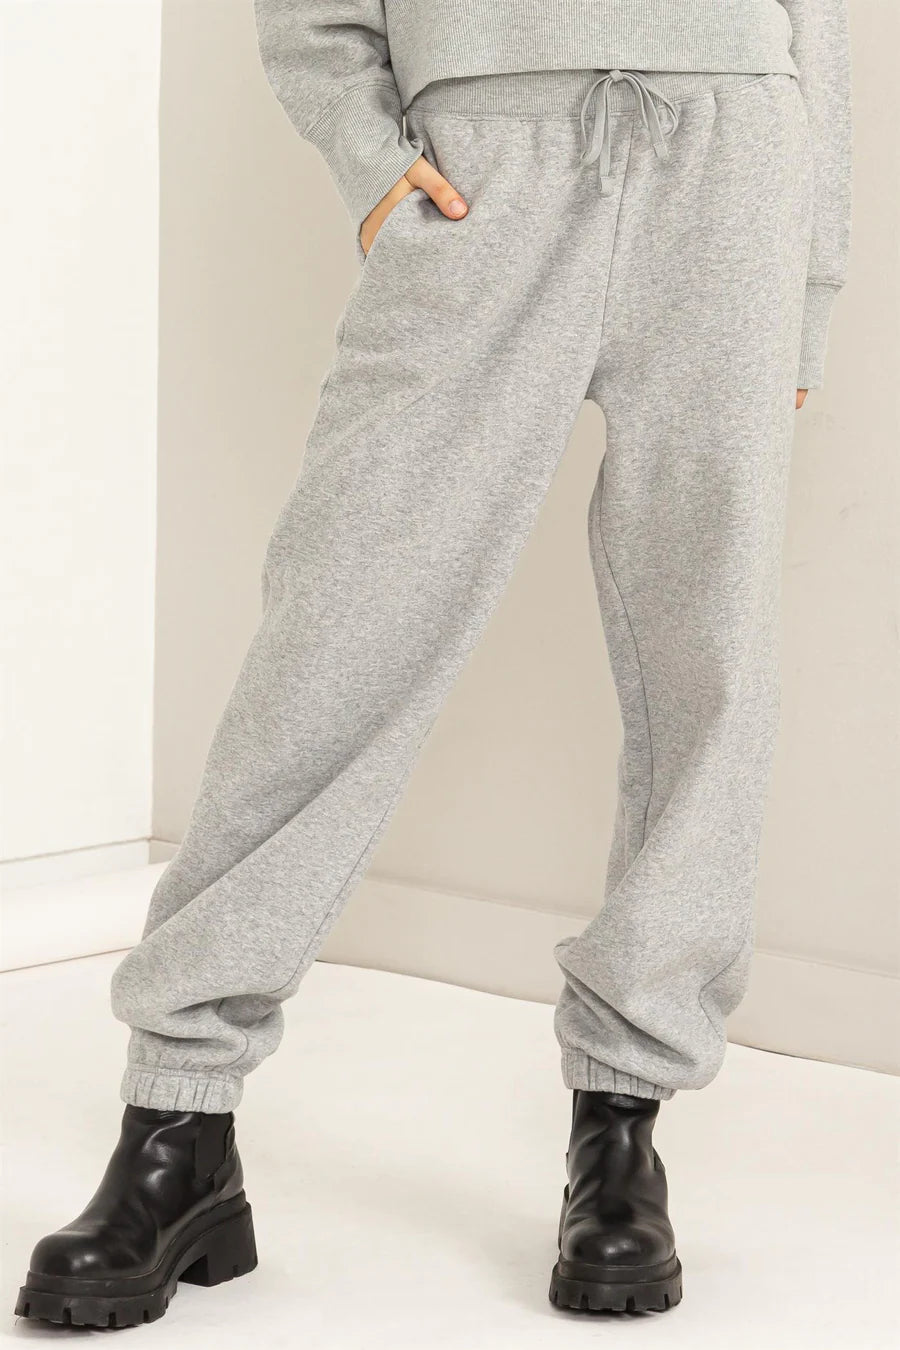 Heather Grey Sweatpants – Shop Closet Chic Boutique